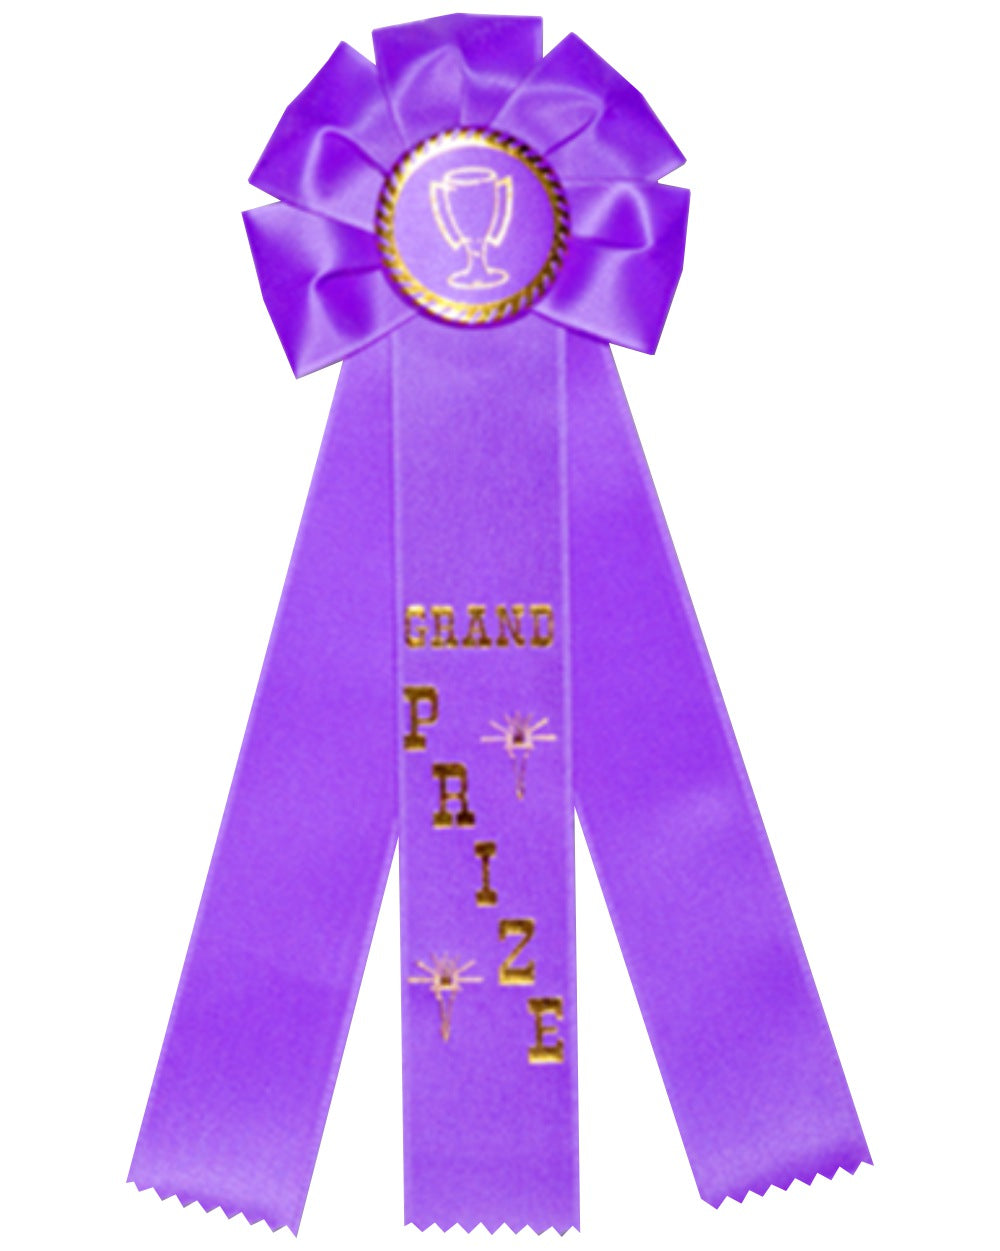 purple rosette ribbons